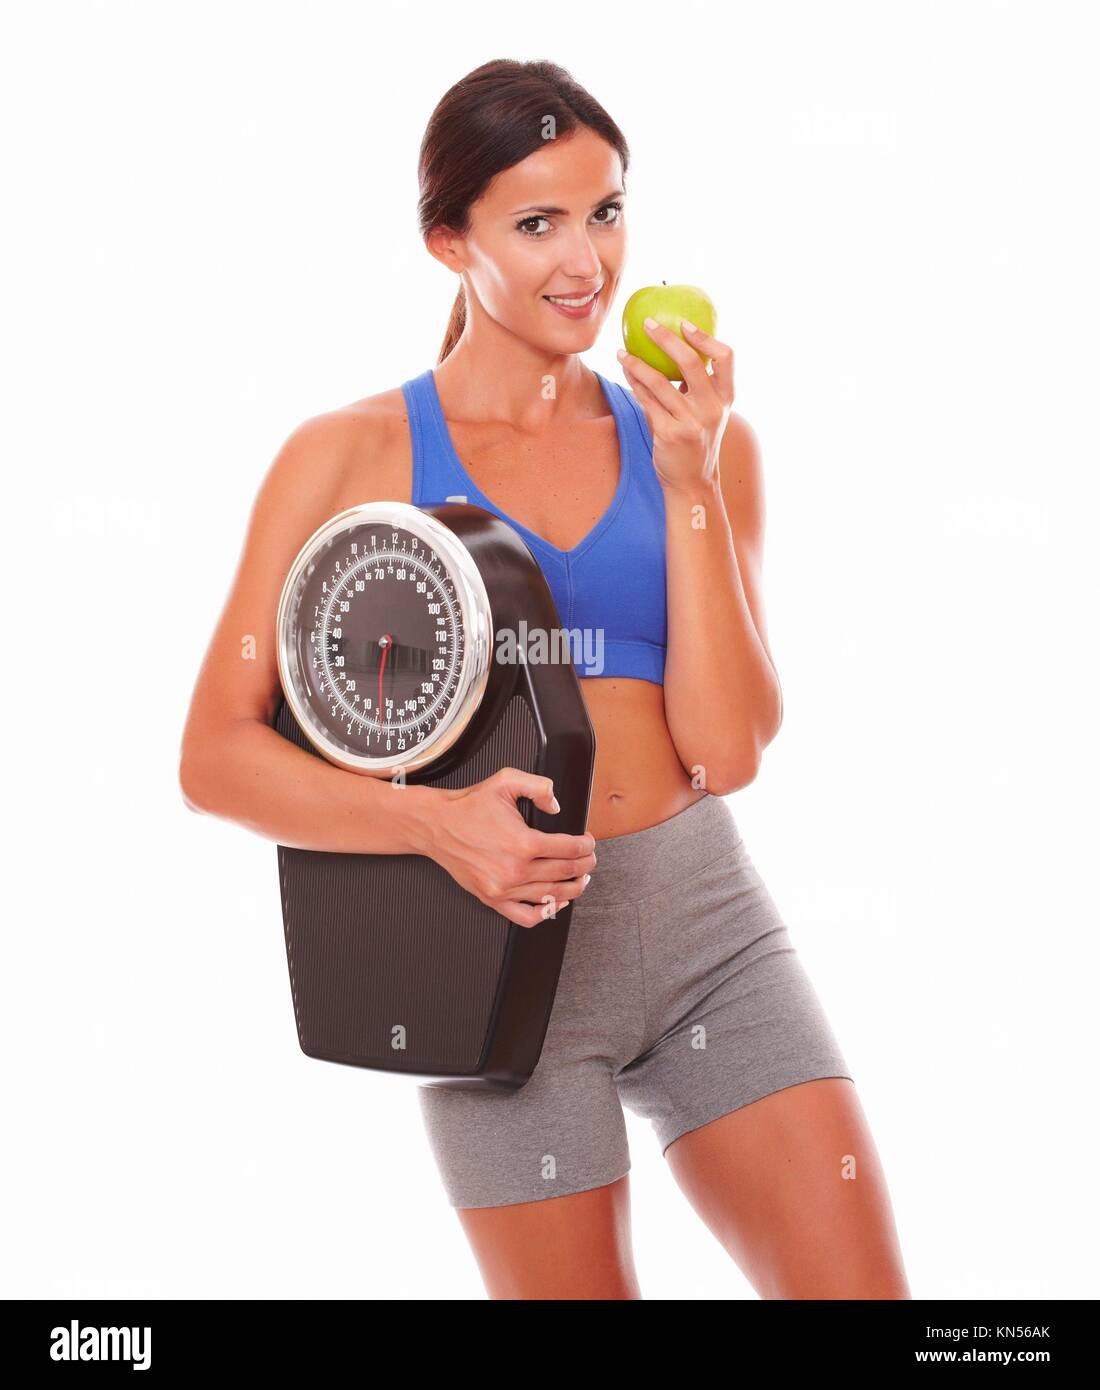 Sportliche junge Frau essen Apple, Gewicht zu verlieren und Sie gegen den weißen Hintergrund. Stockfoto